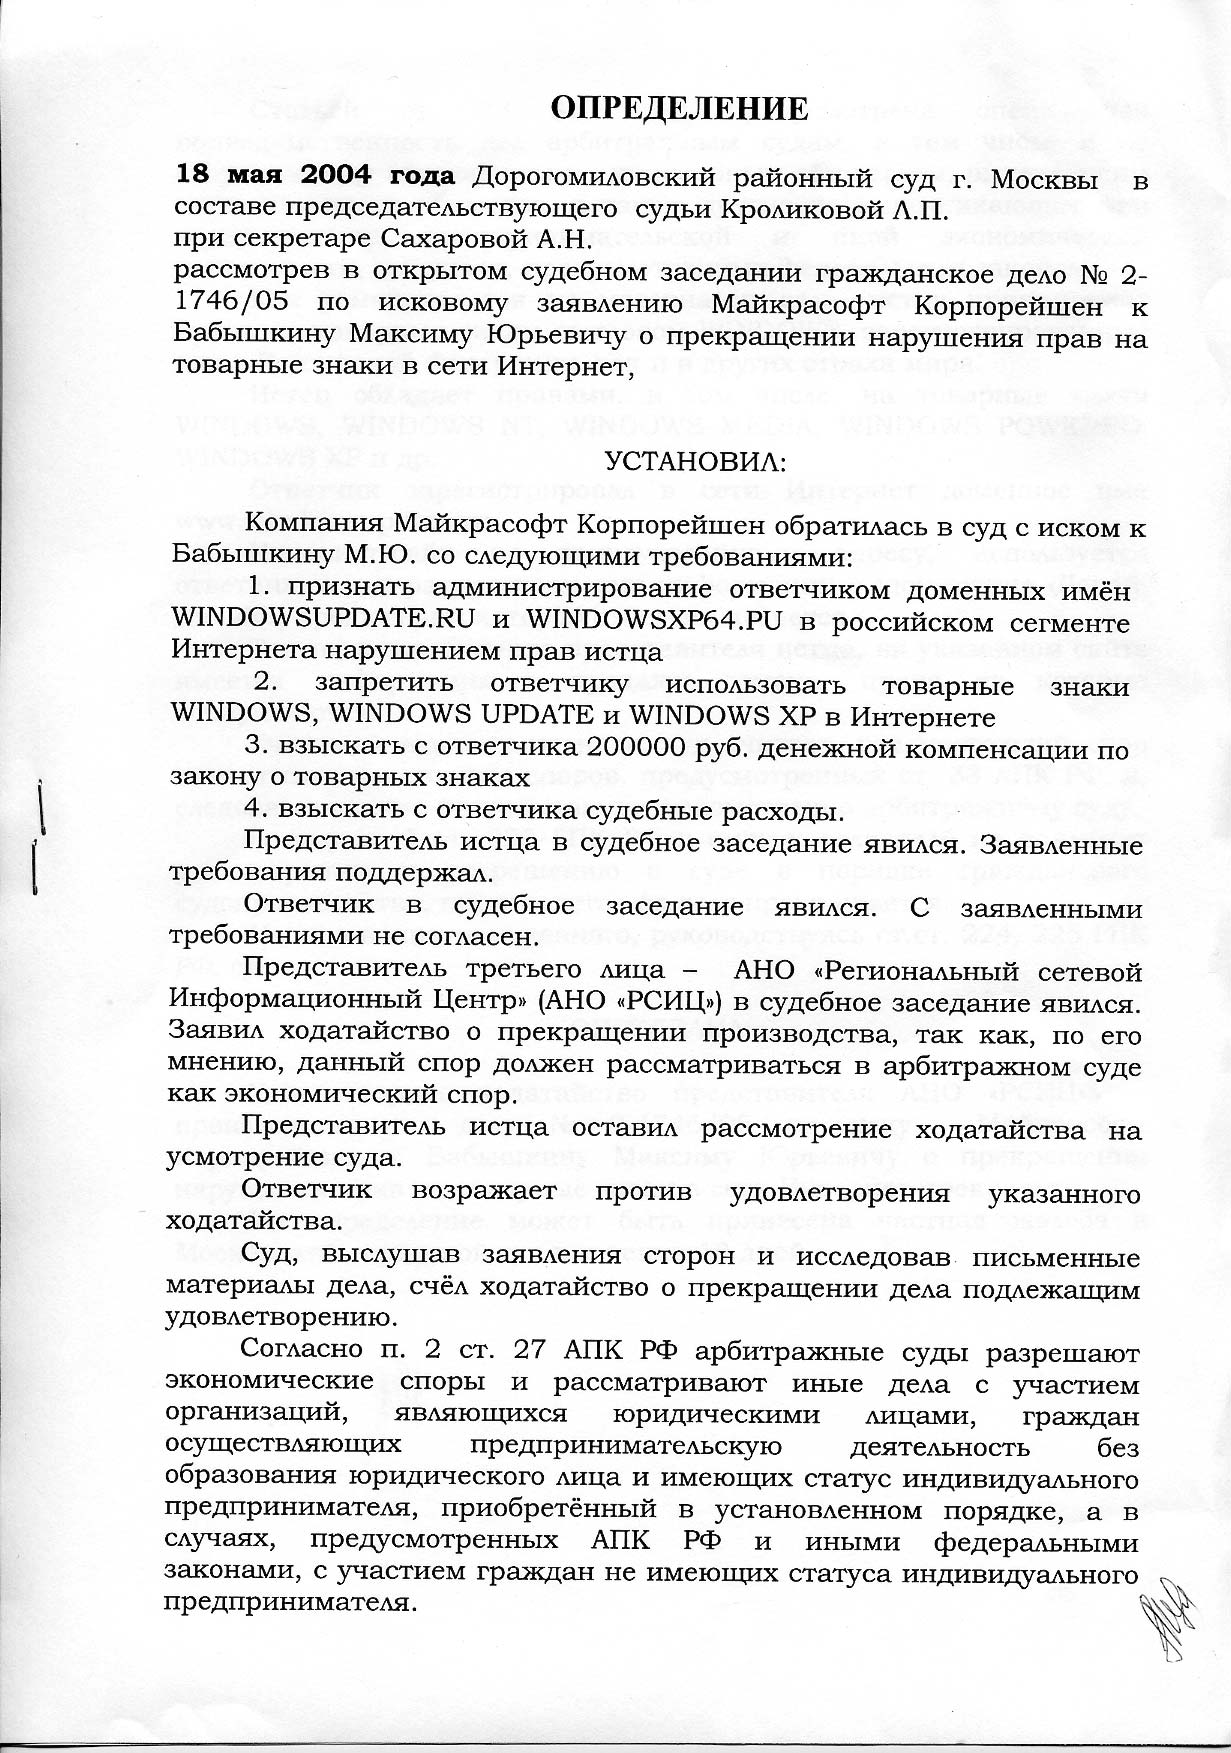 Судебные решения по делам о доменах. Опыт России: windowsupdate.ru и windowsxp64.ru